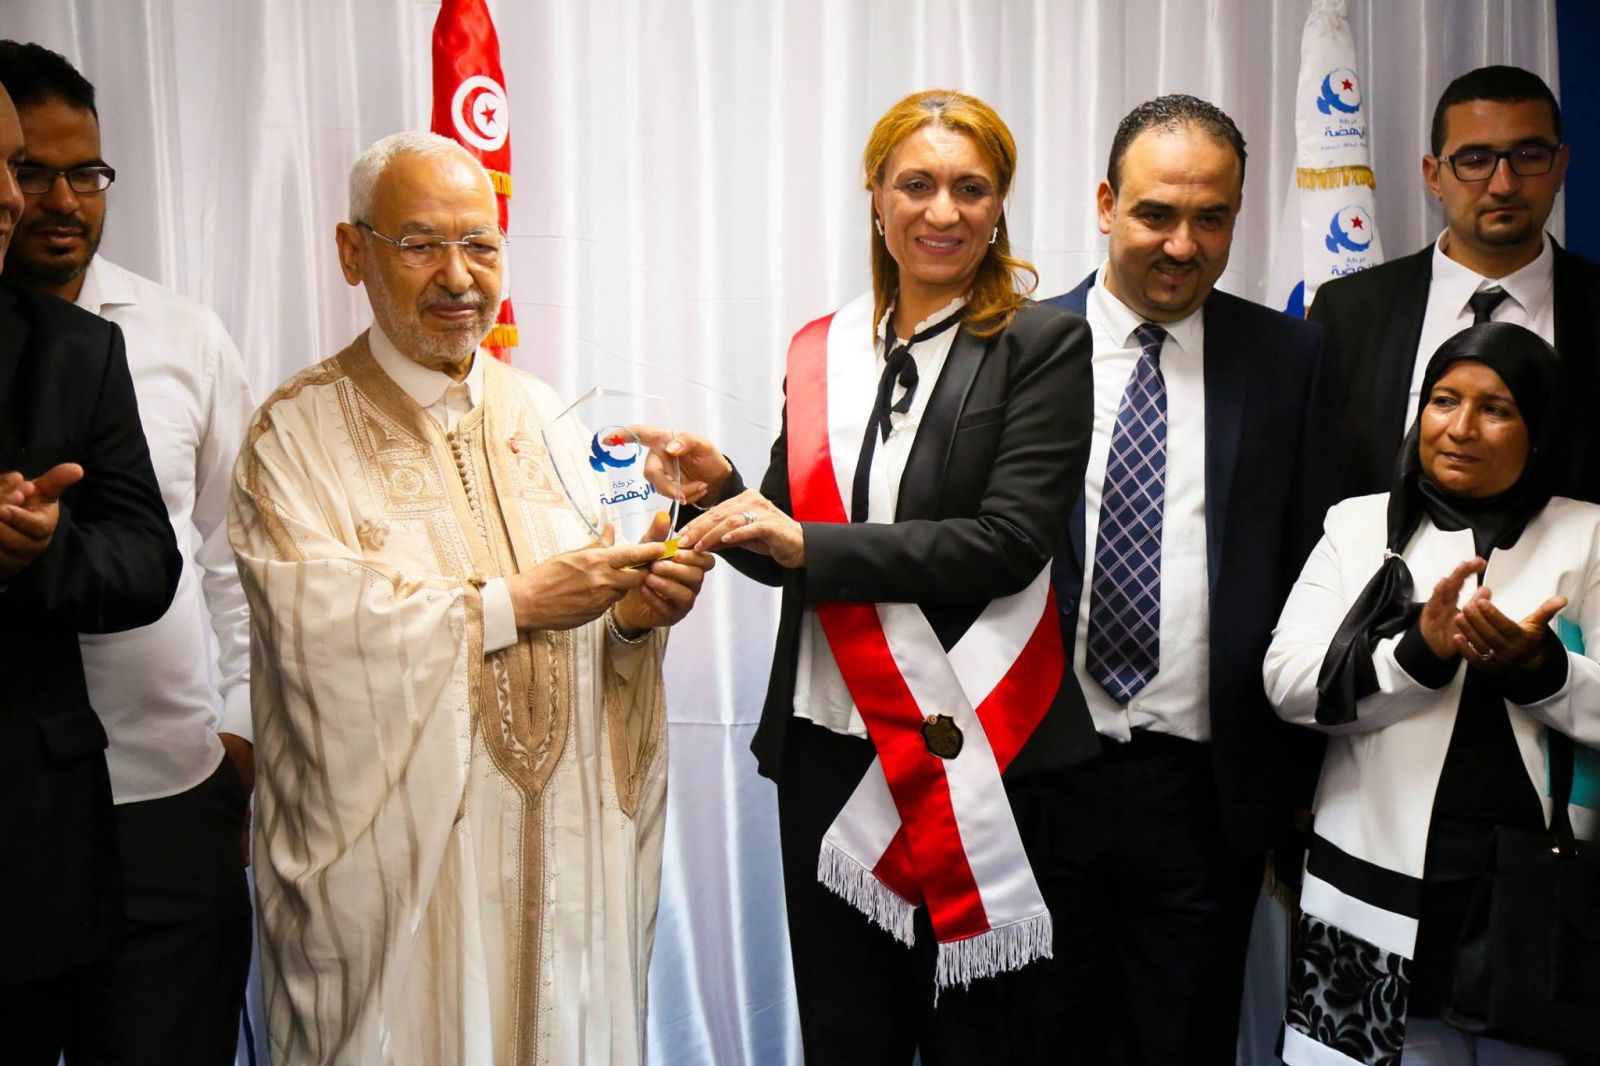 La maire de Tunis devra batailler pour sa survie, pour l’héritage d’Ennahdha